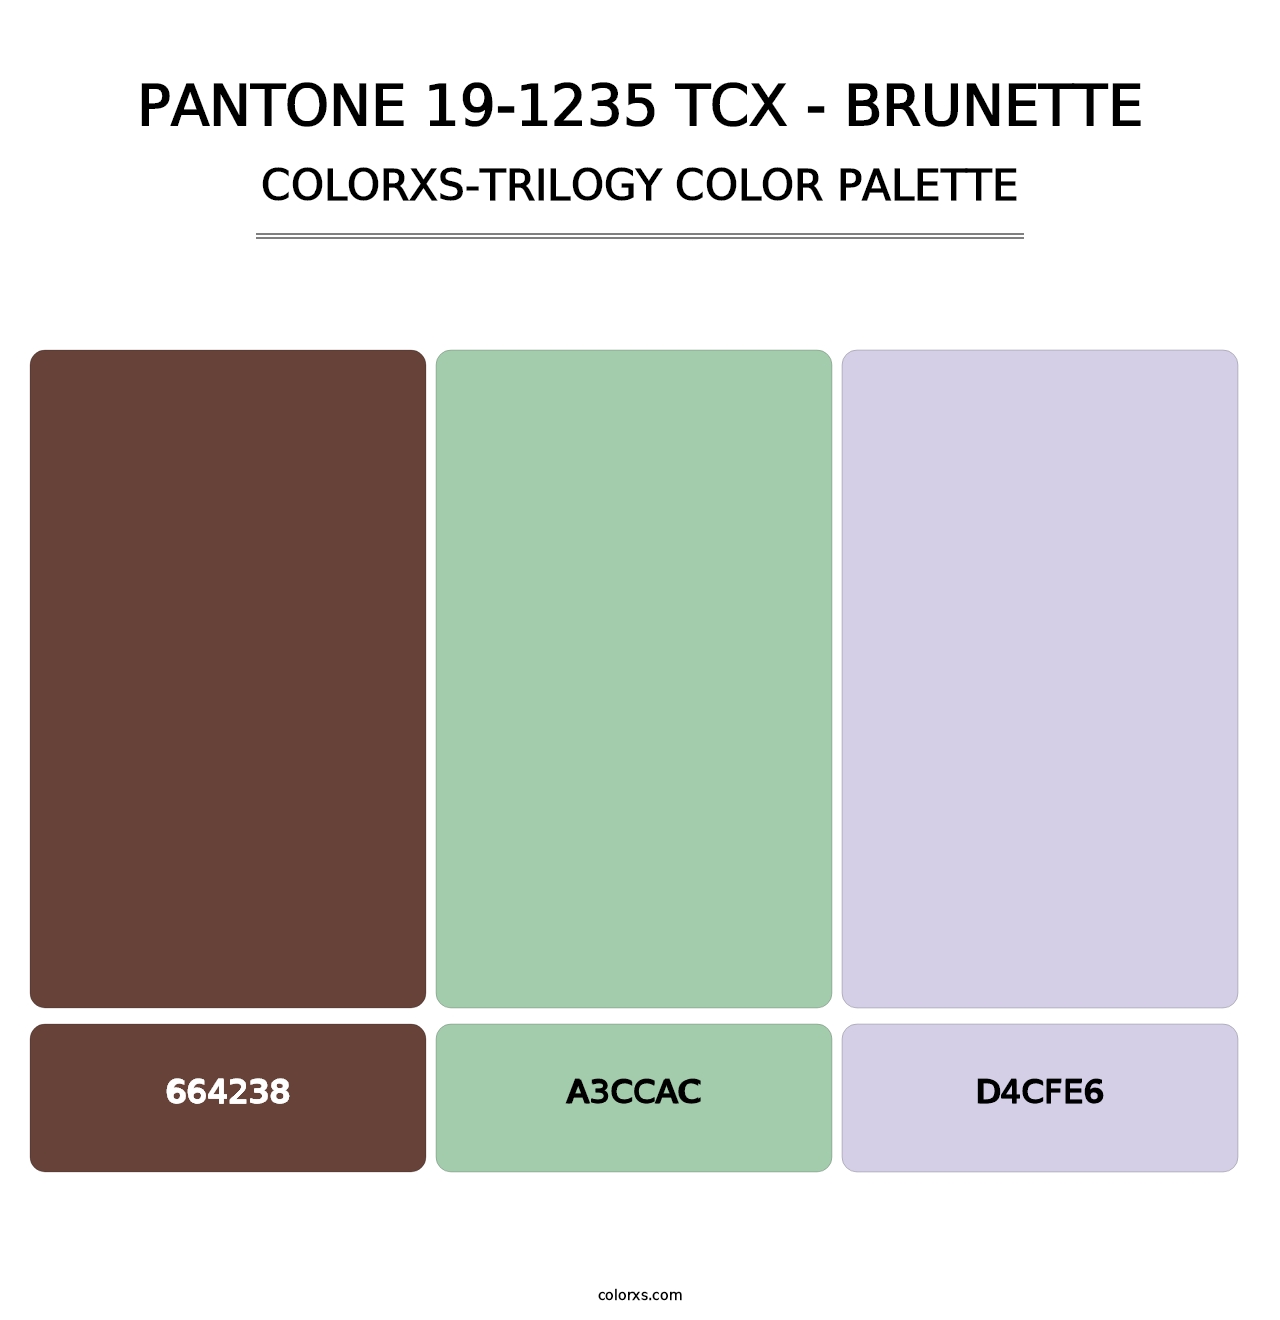 PANTONE 19-1235 TCX - Brunette - Colorxs Trilogy Palette